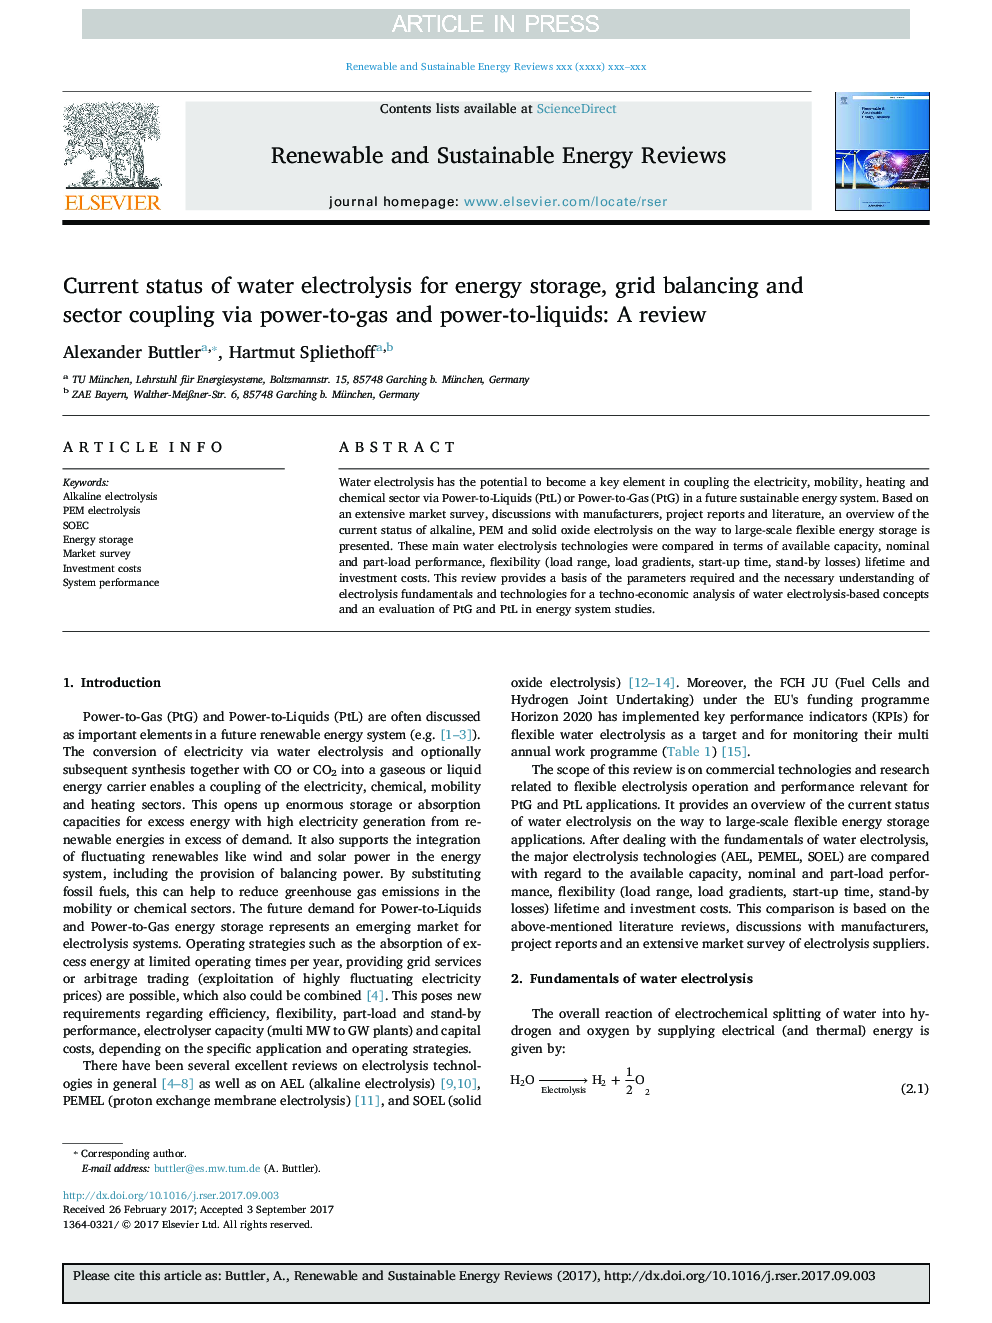 وضعیت فعلی الکترولیز آب برای ذخیره انرژی، تعادل شبکه و اتصال بخش از طریق قدرت به گاز و قدرت به مایعات: بررسی 